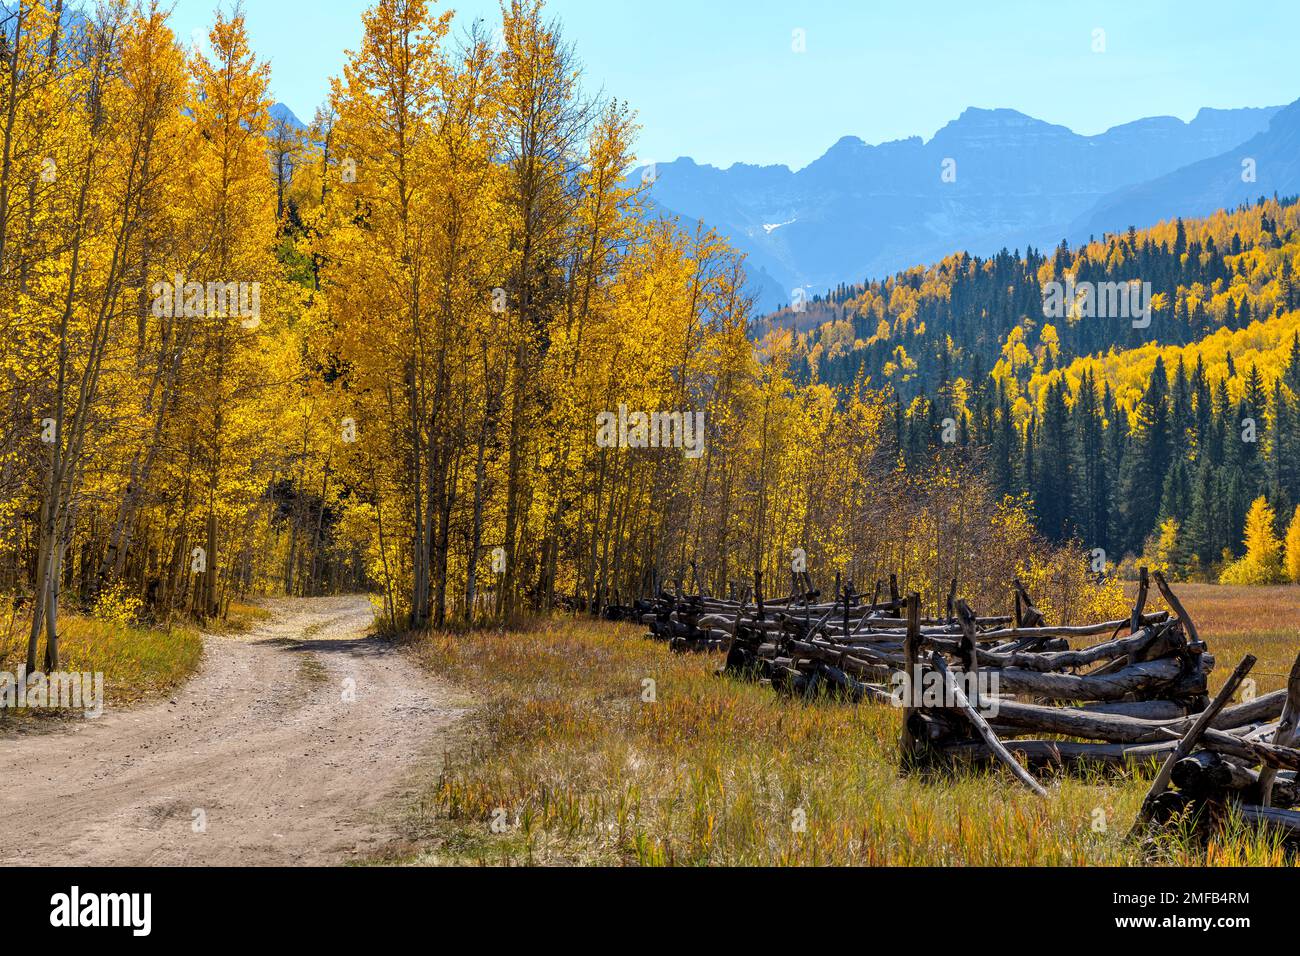 Herbsttal – Uncompahgre National Forest, CO, USA, Ist Eine Landstraße, die sich an einem sonnigen Herbsttag in einem farbenfrohen Tal am Fuße der Sneffels Range schlängelt. Stockfoto